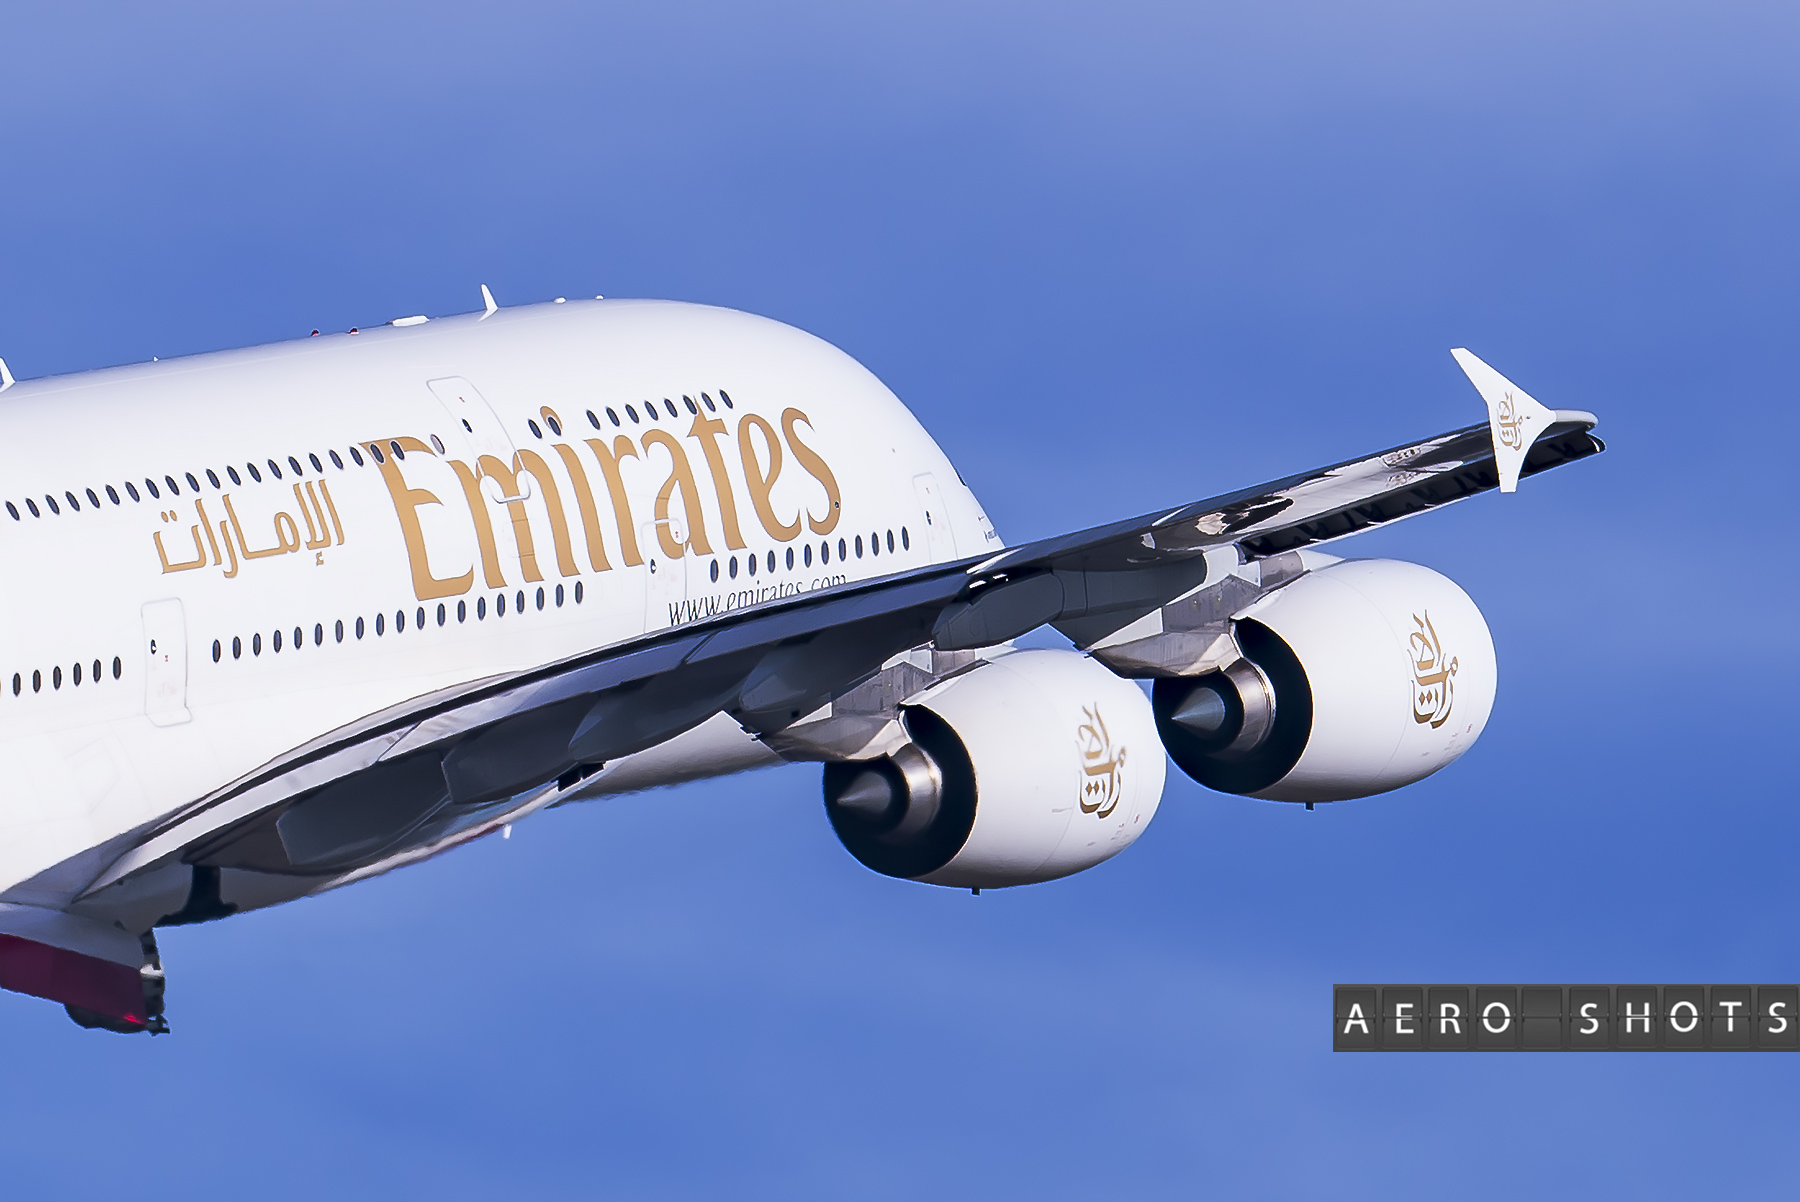 Dubai bound A380